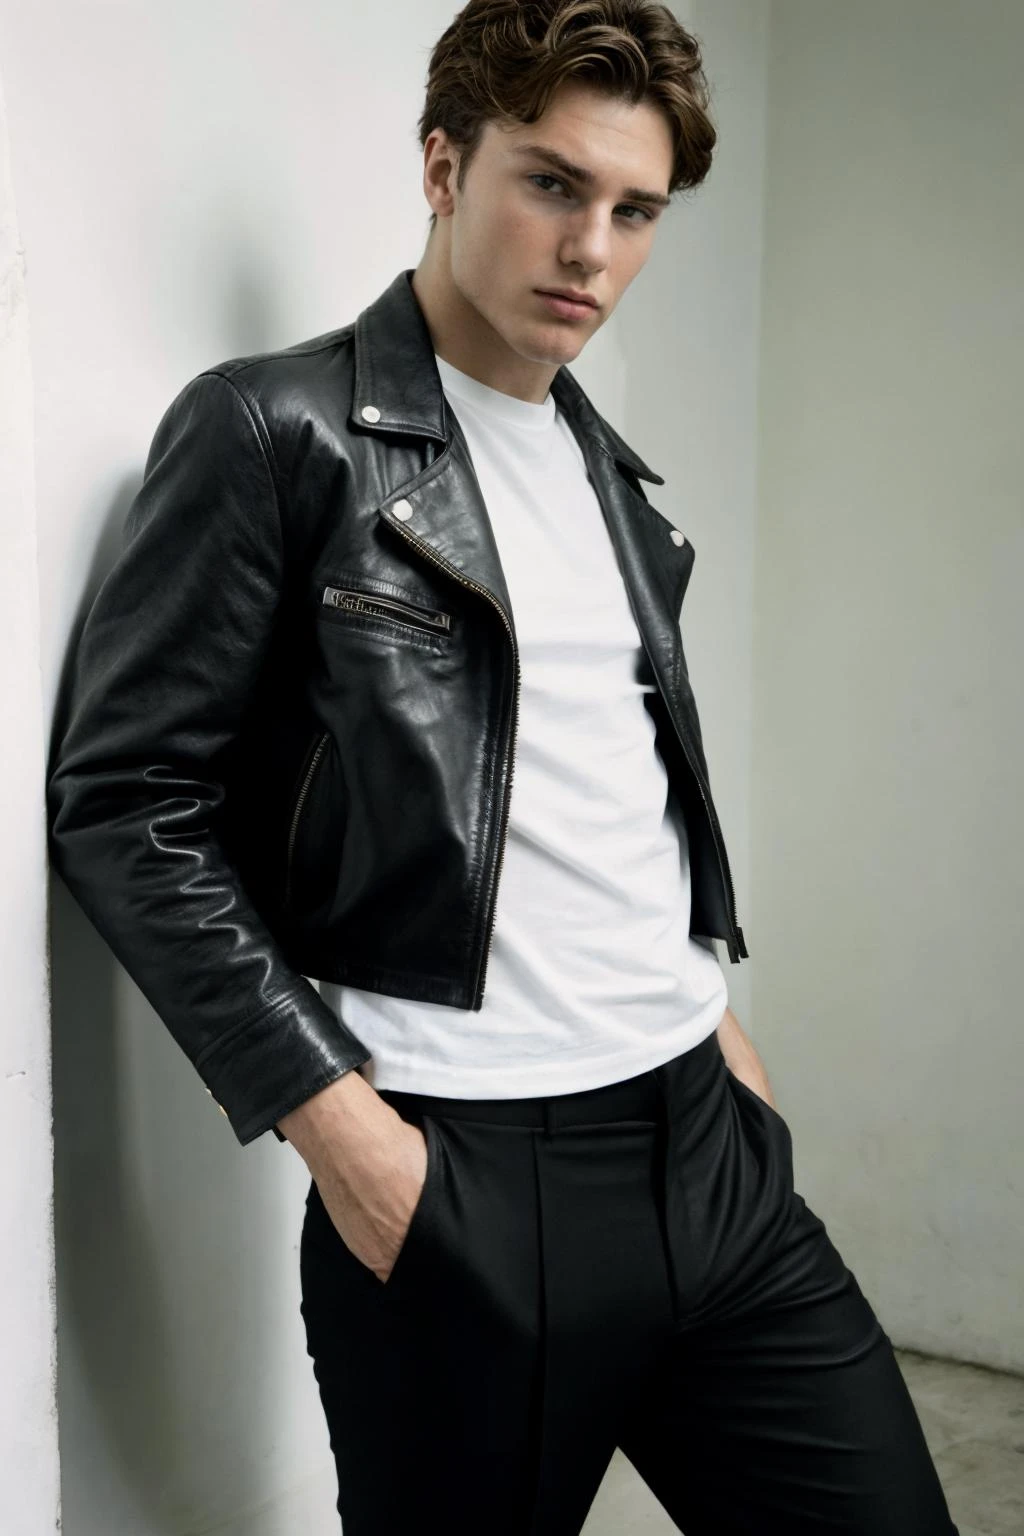 原始照片, 男人 levi 的照片_由 Tim Walker 拍攝的conely Saint Laurent 黑色皮夾克、白色 T 恤和黑色長褲